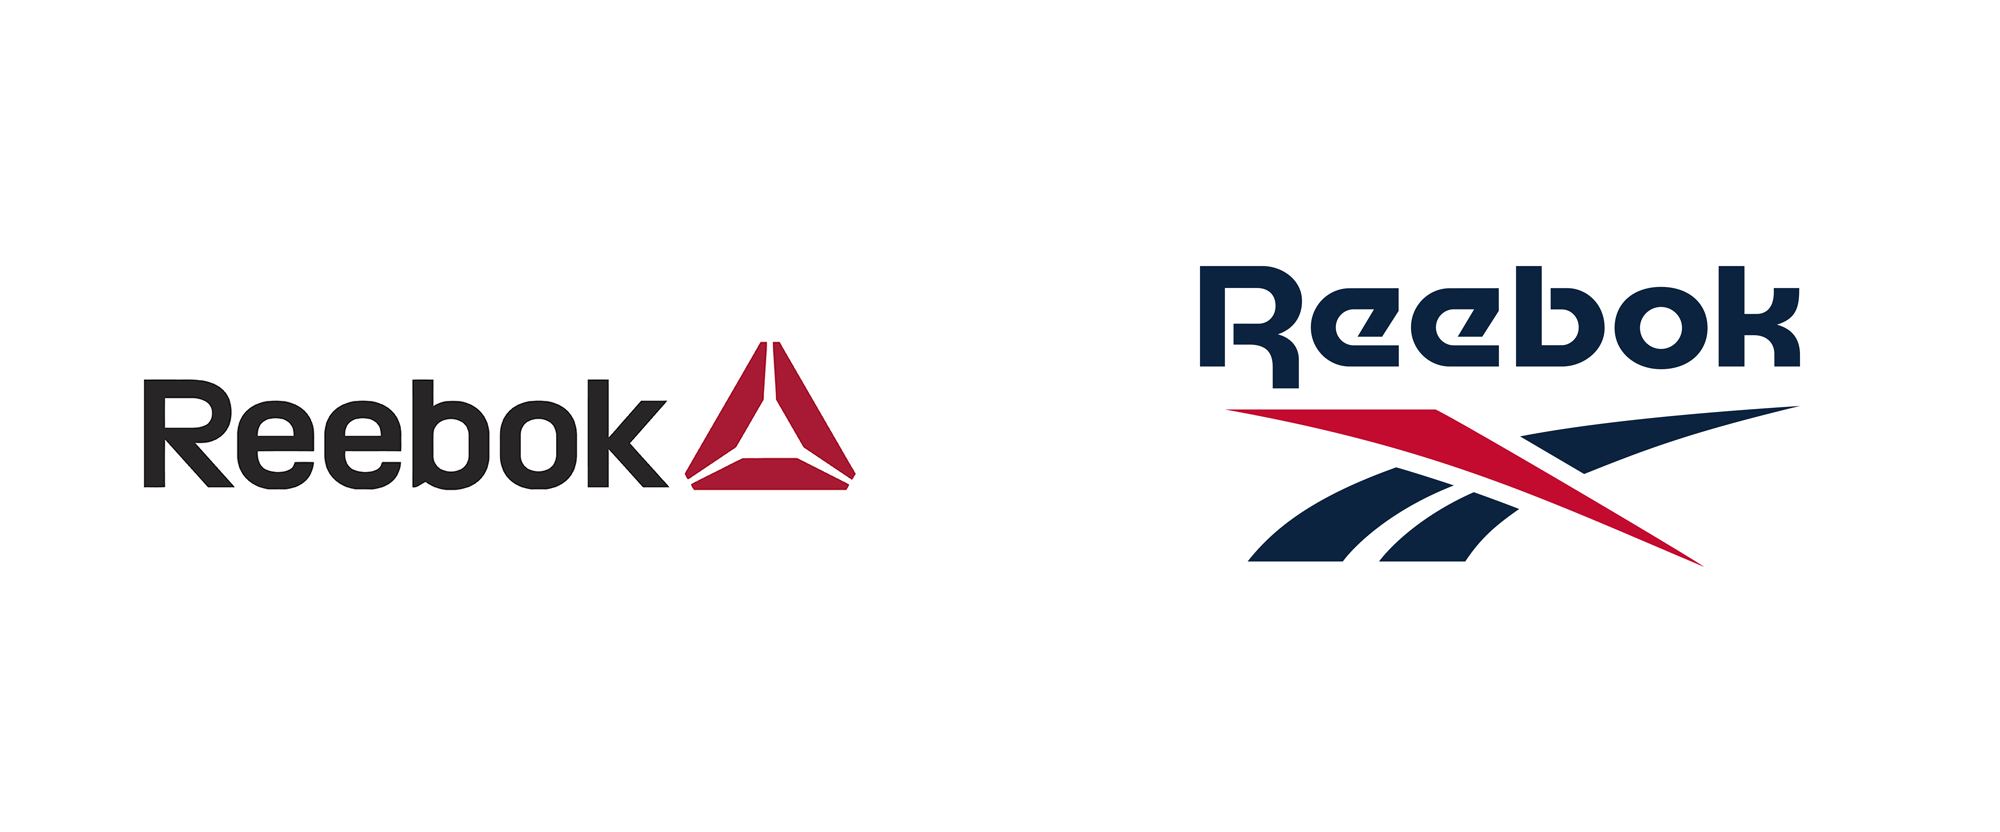 reebok logo change